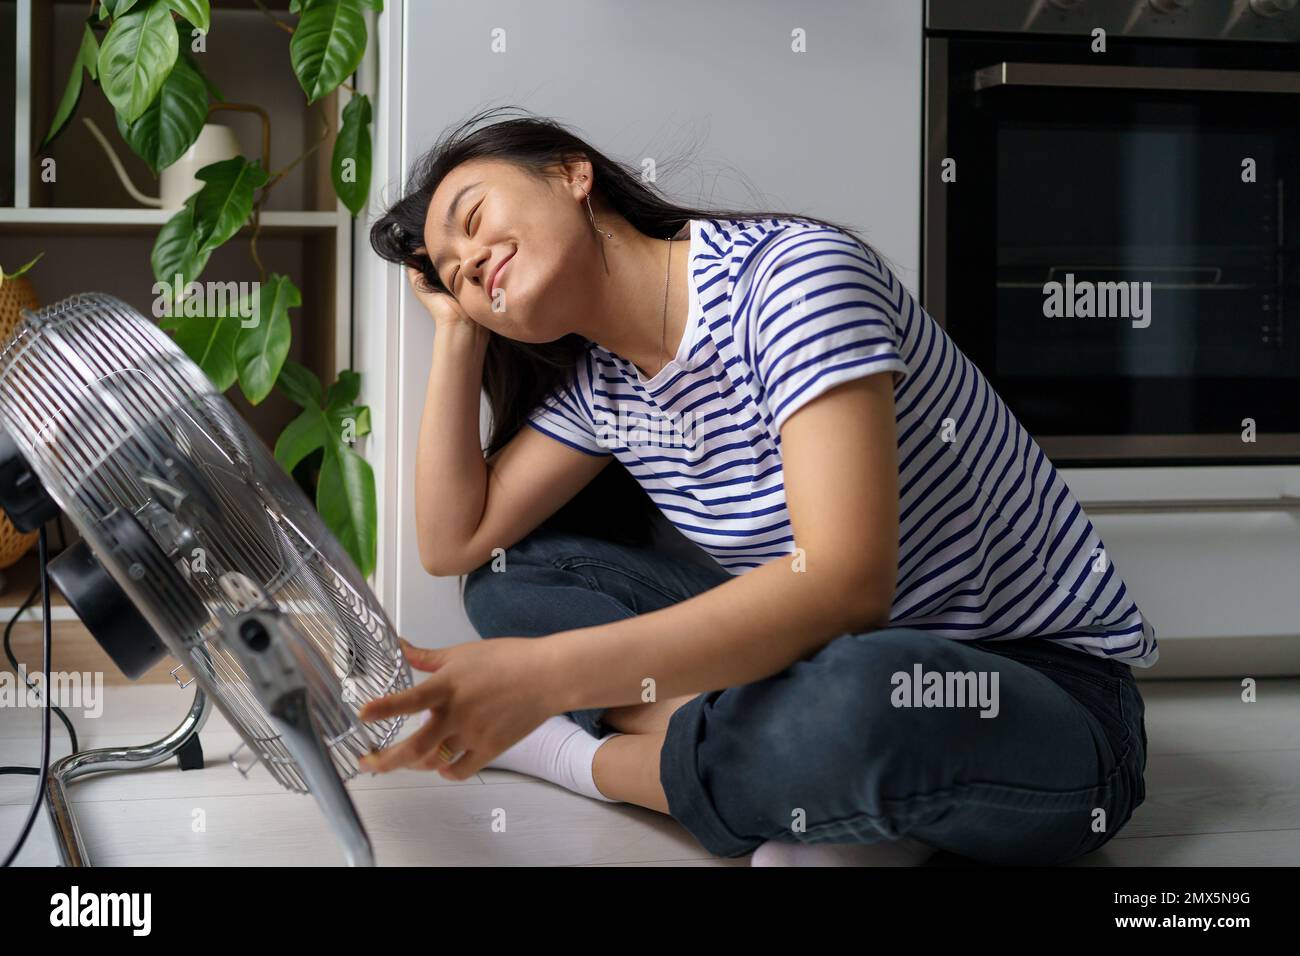 Heureuse fille asiatique détendue se réjouit dans le flux d'air froid du ventilateur se trouve sur le sol dans la cuisine de l'appartement Banque D'Images